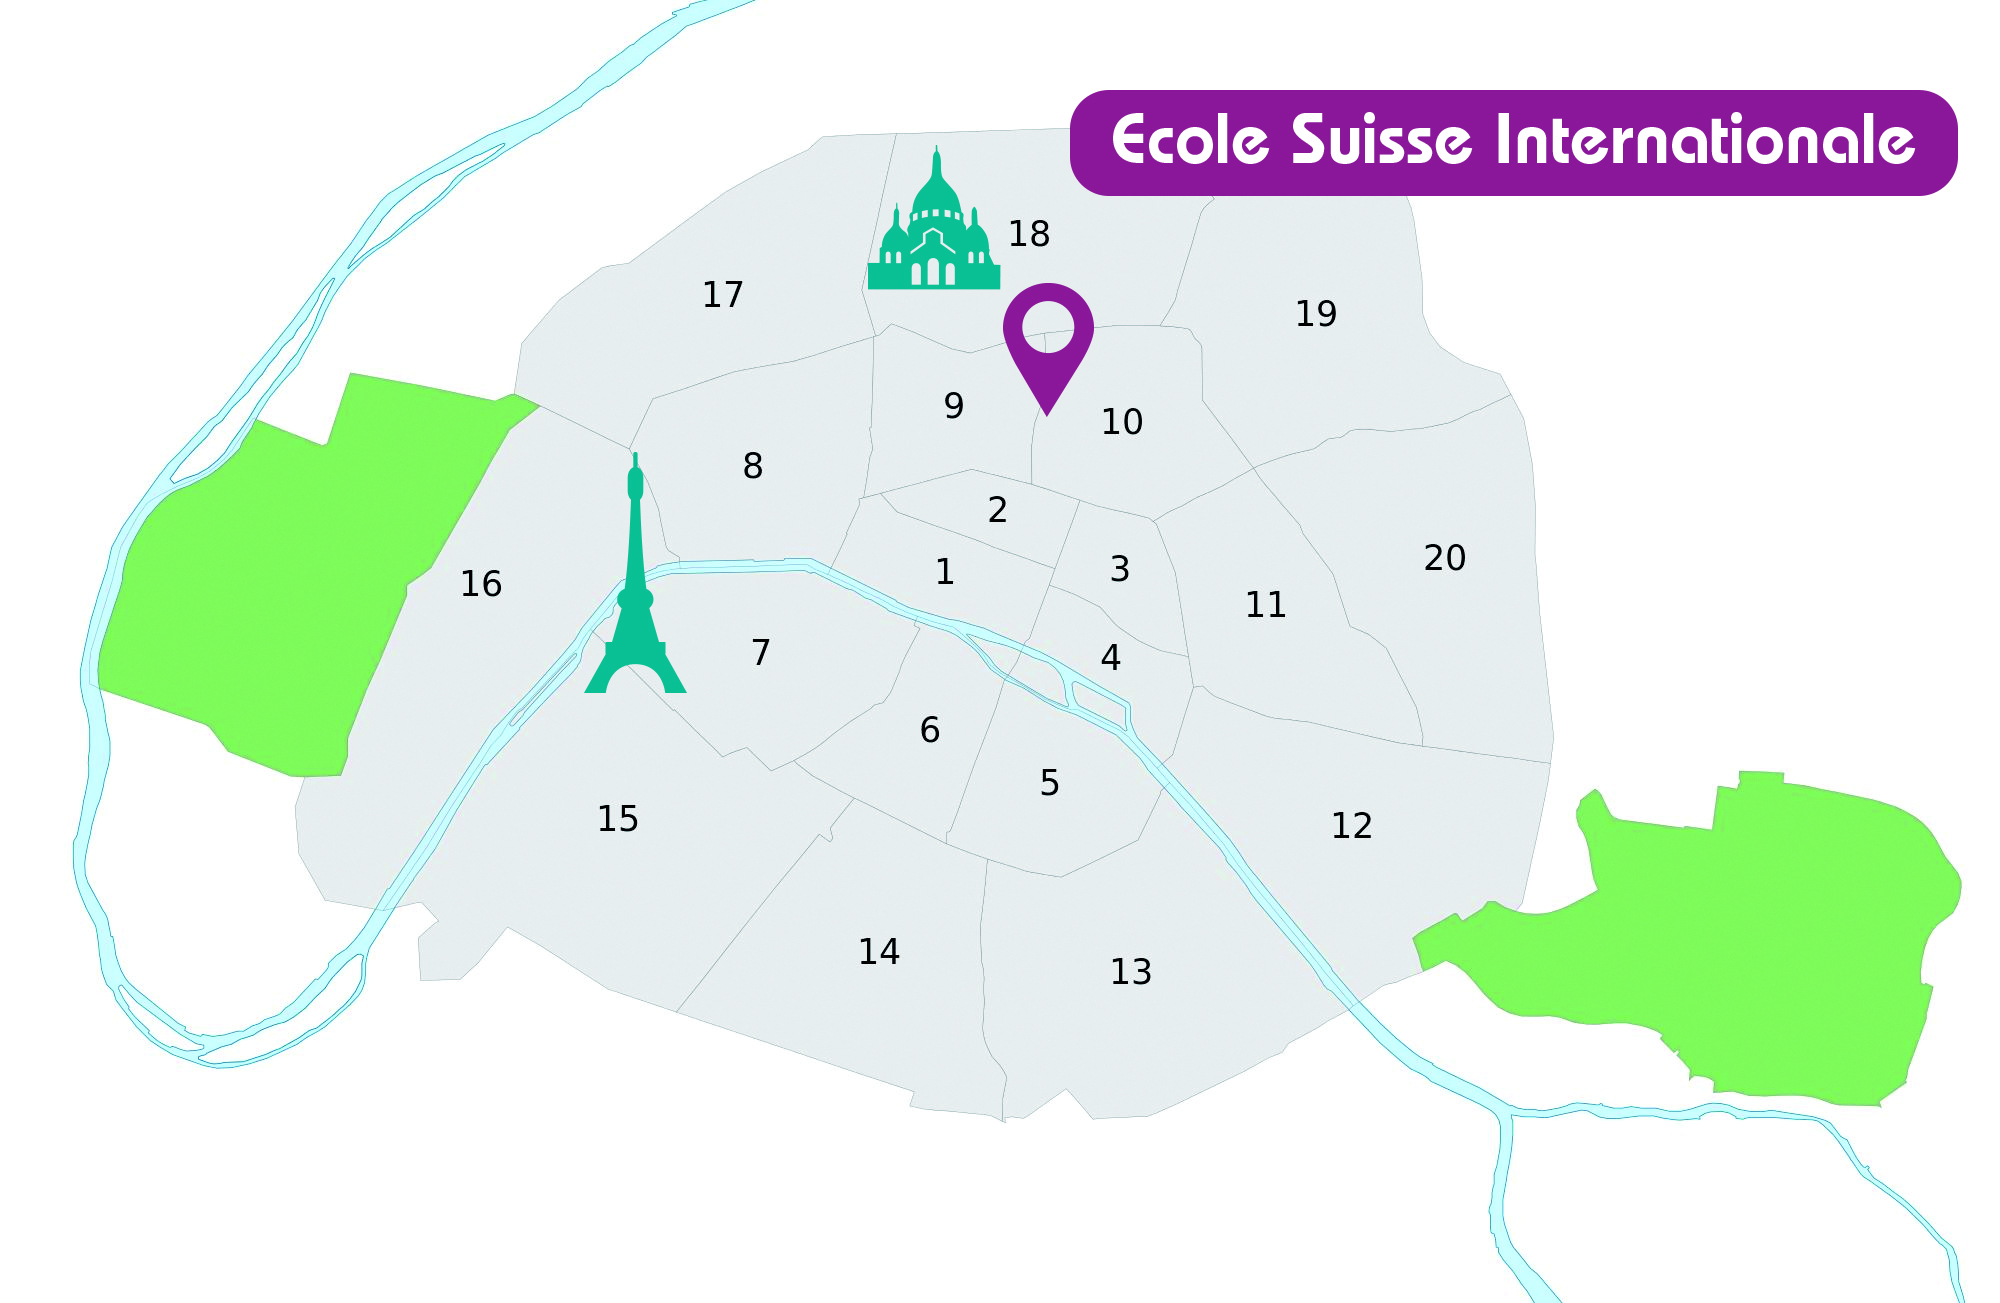 Ecole Suisse Internationale in Paris